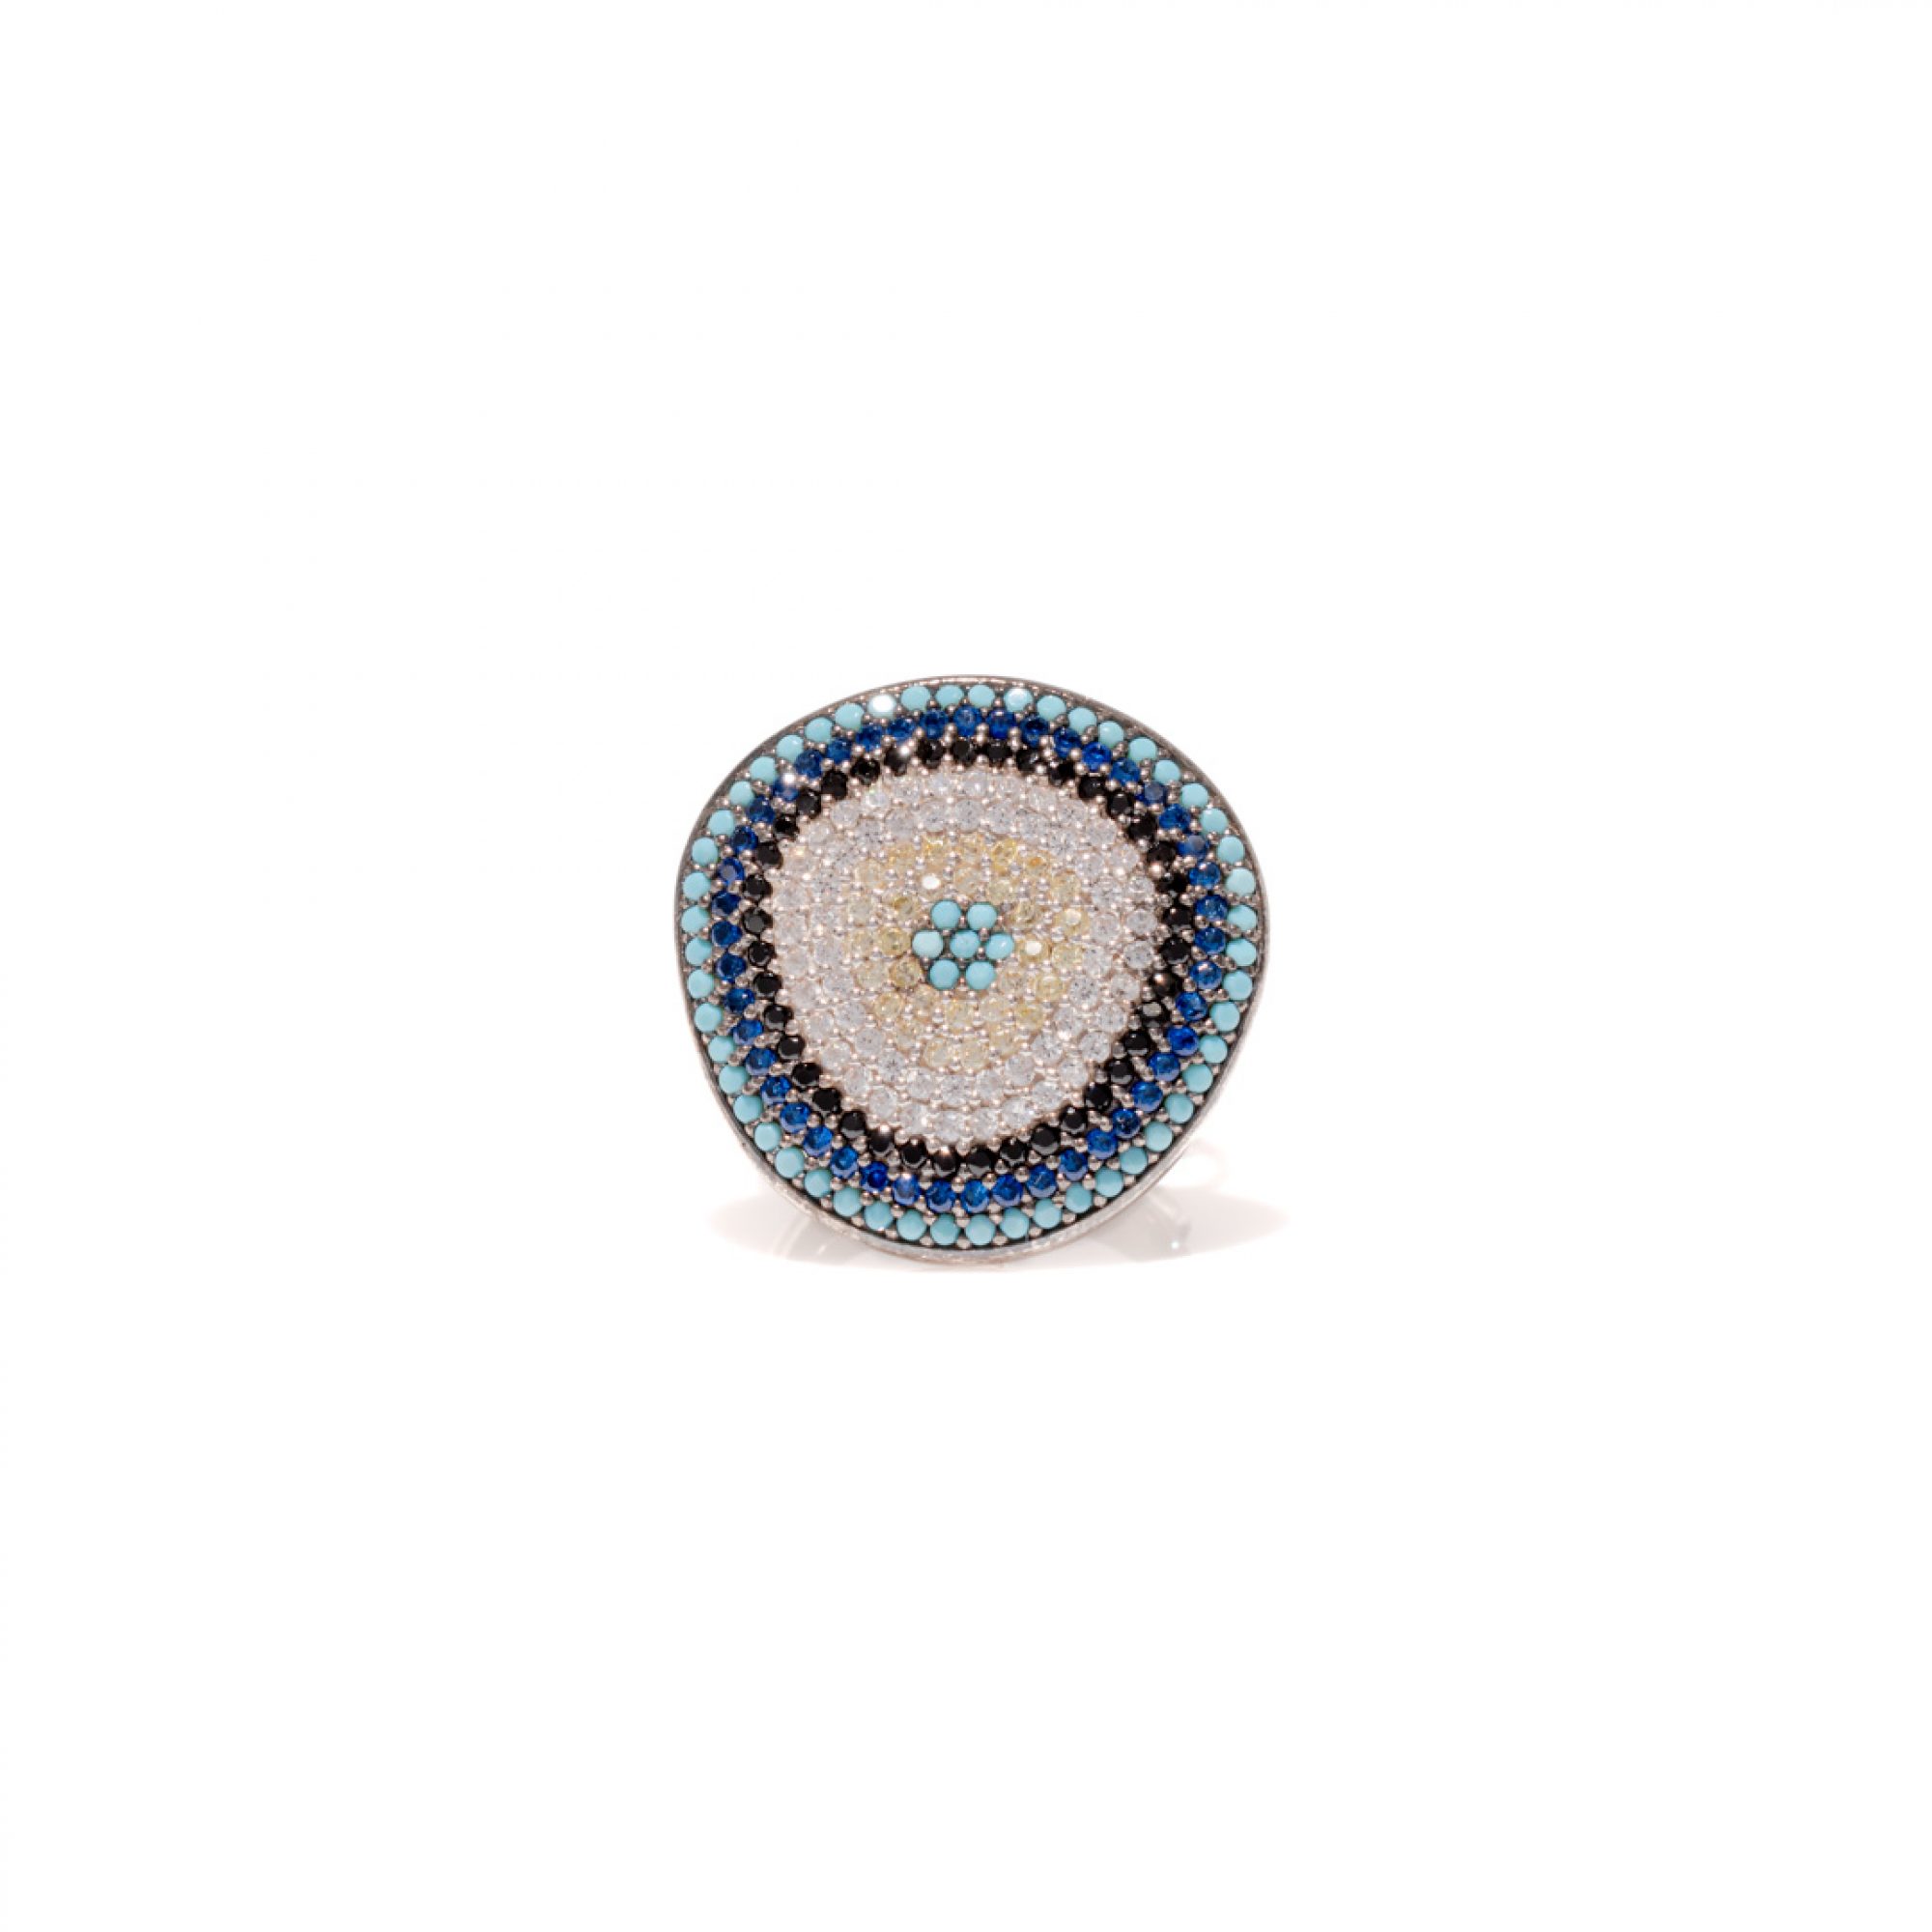 Eye ring with zircon stones